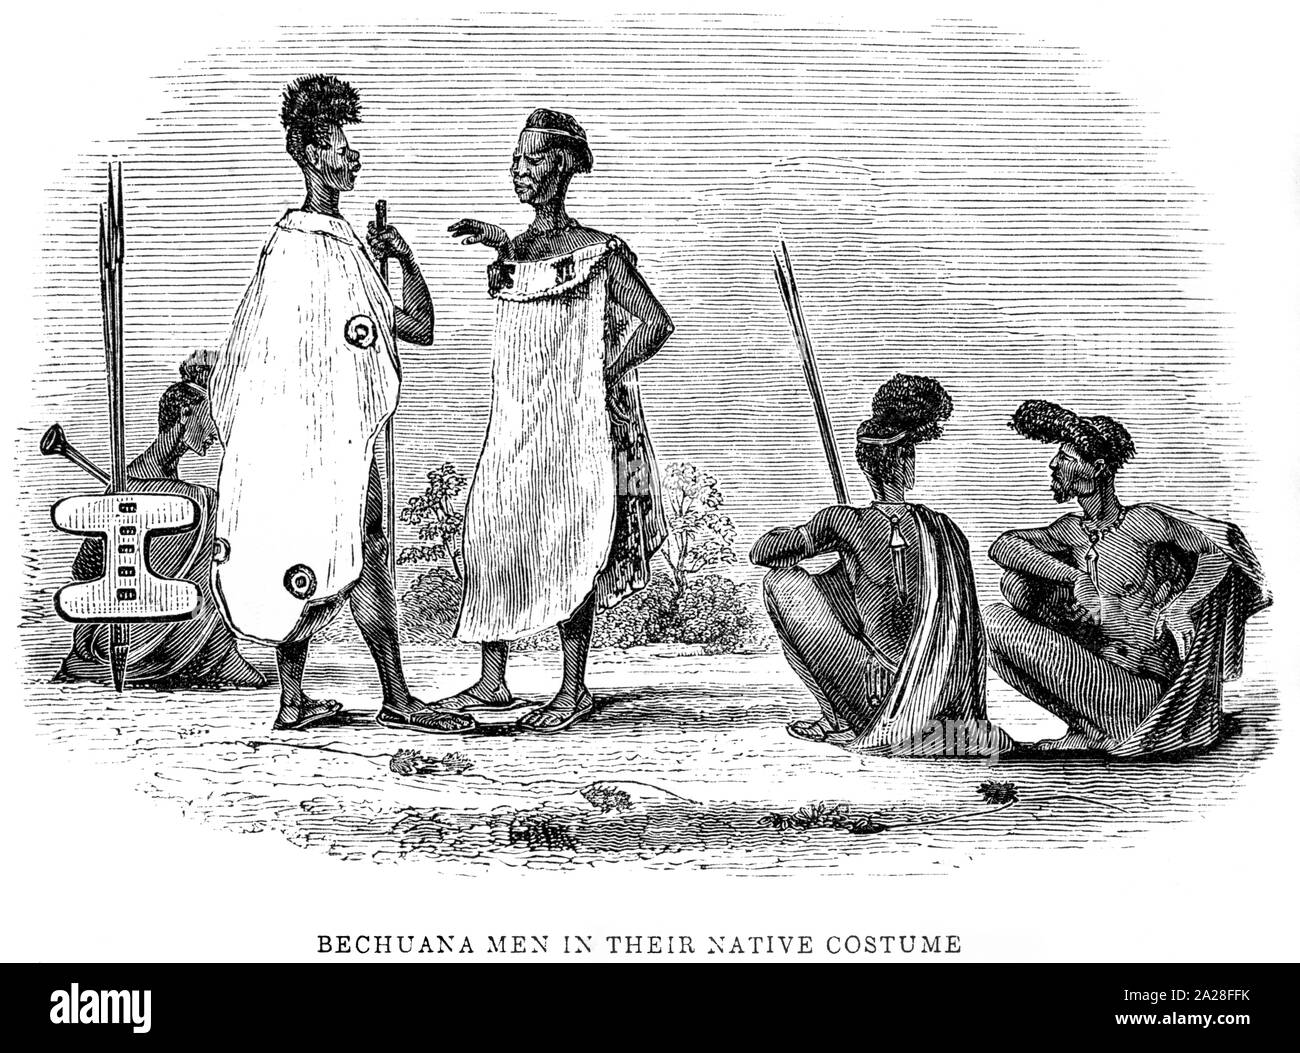 Eine Abbildung der Bechuana Männer in ihren nativen Kostüm in Südafrika gescannt und in hoher Auflösung aus einem Buch von Robert Moffat im Jahre 1842 gedruckt. Stockfoto